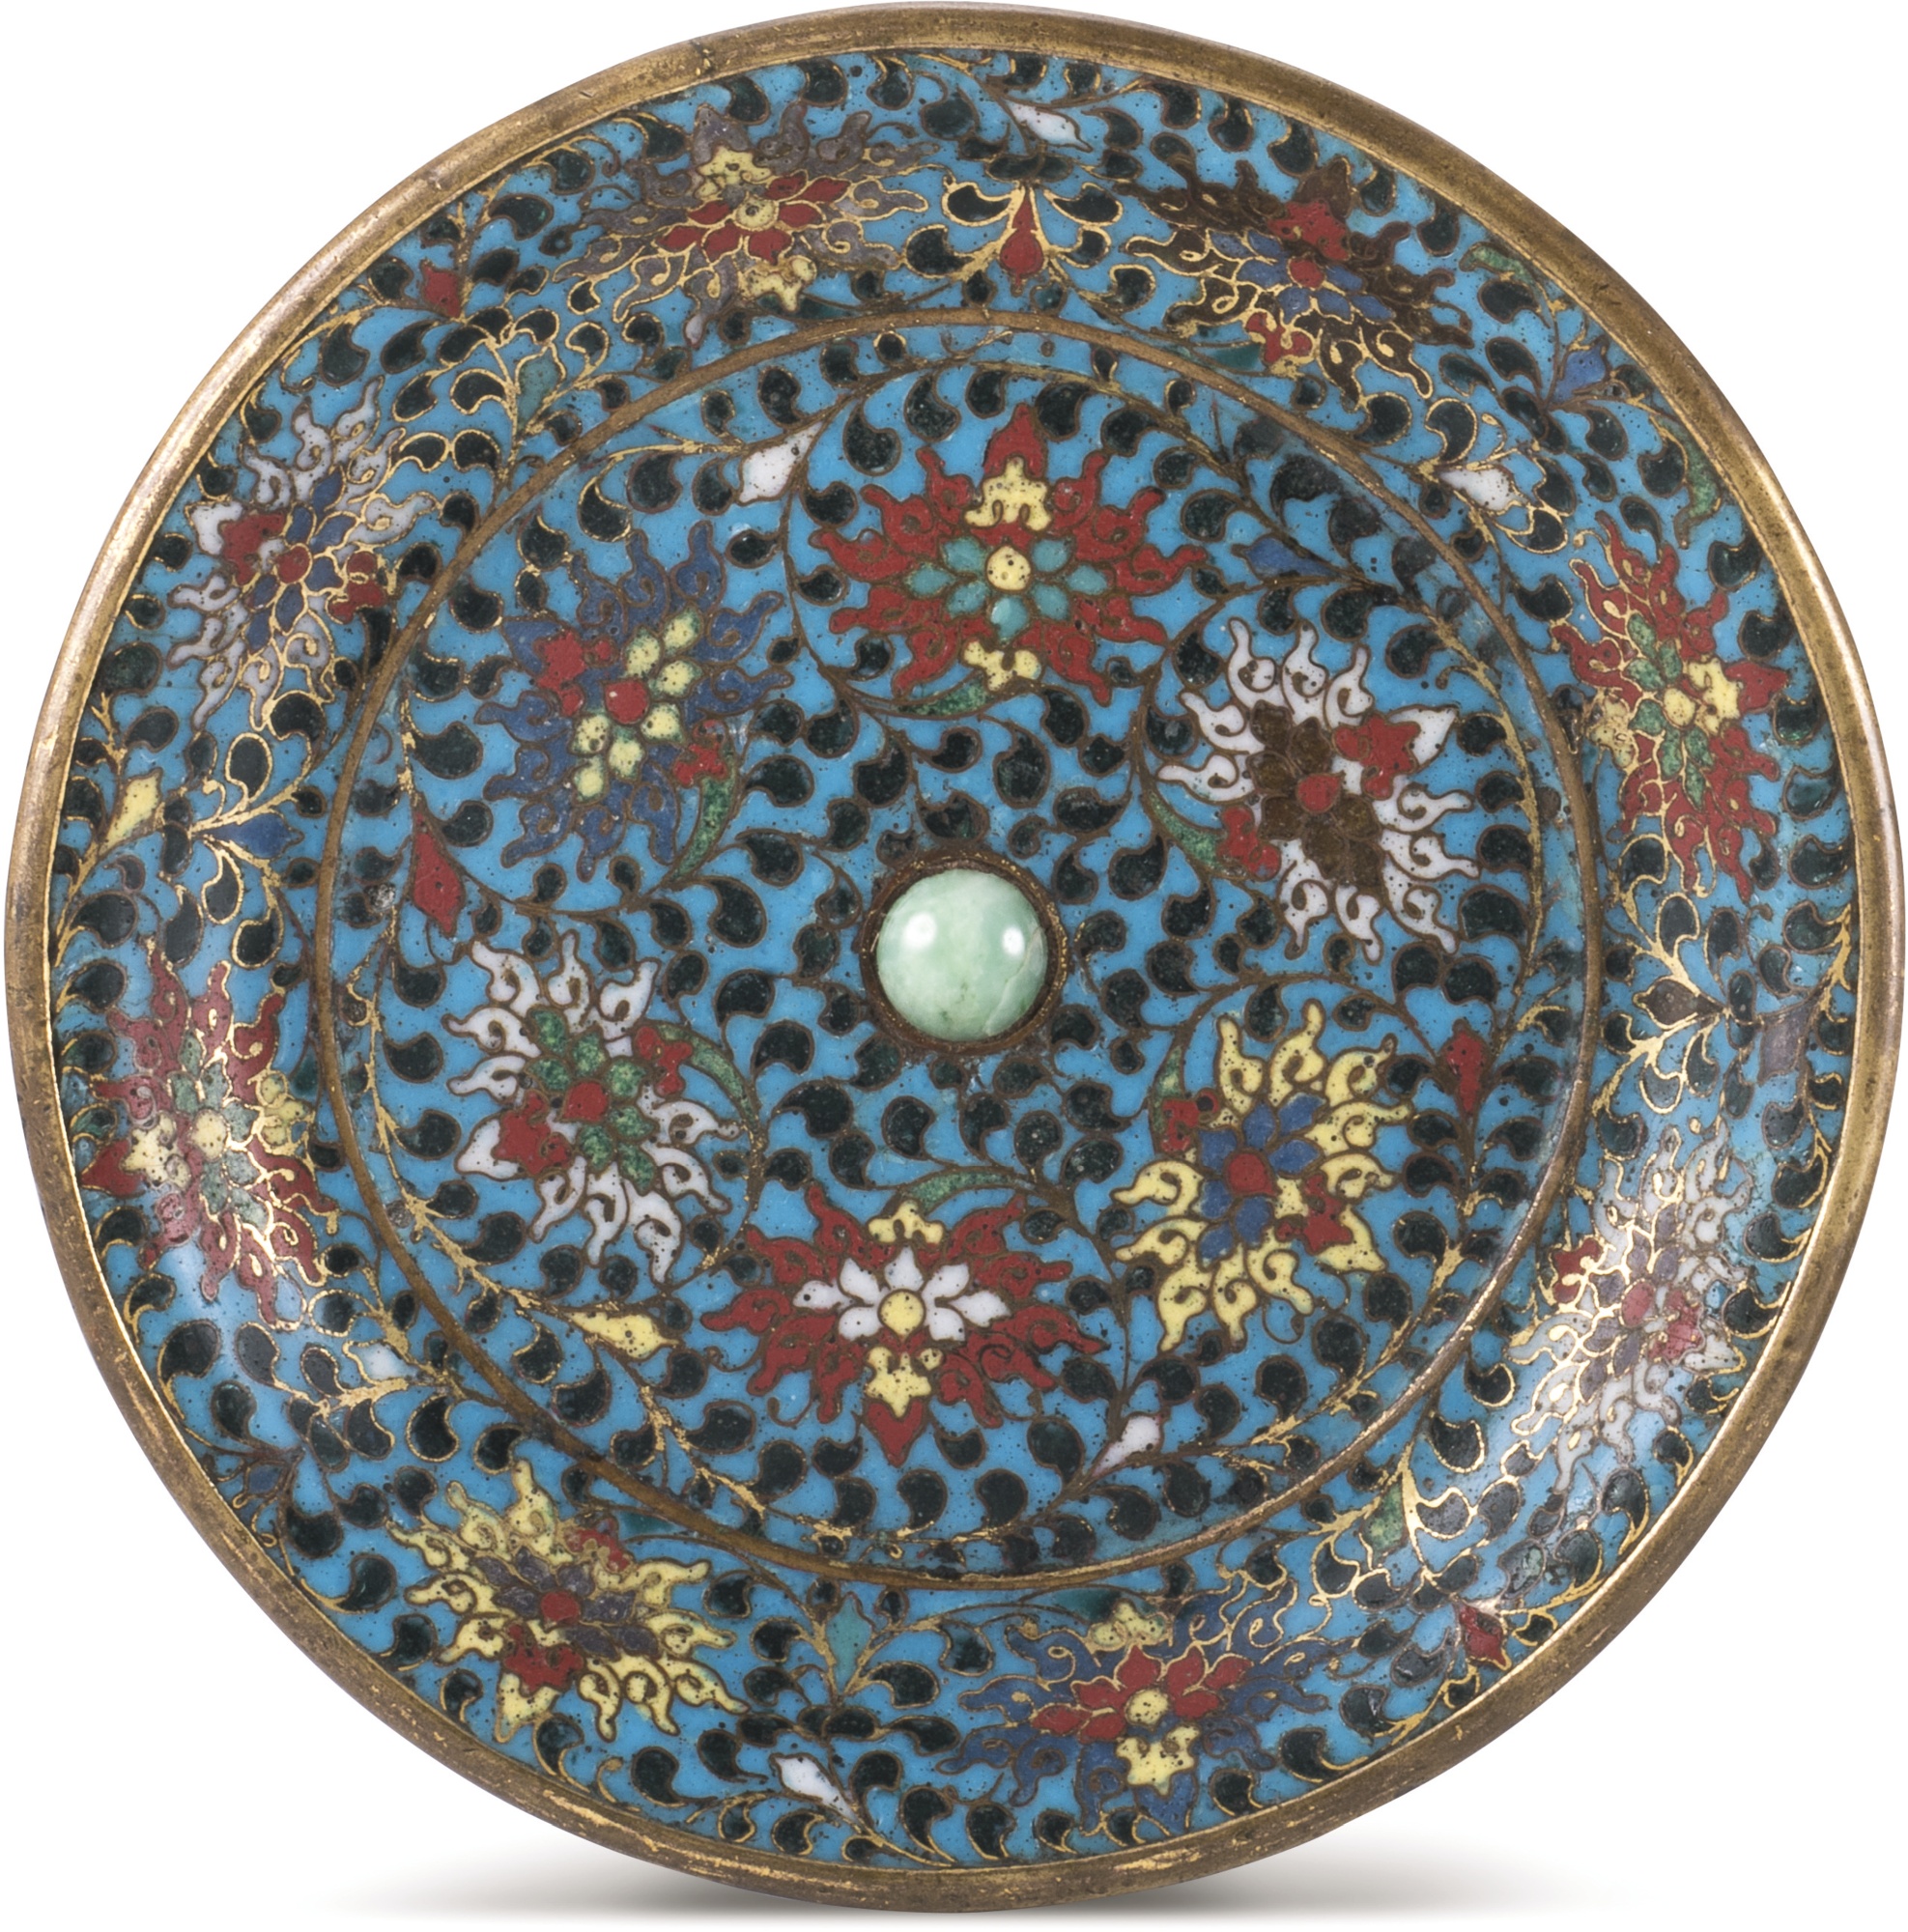 明十六世紀 掐絲琺瑯纏蓮紋燭盤